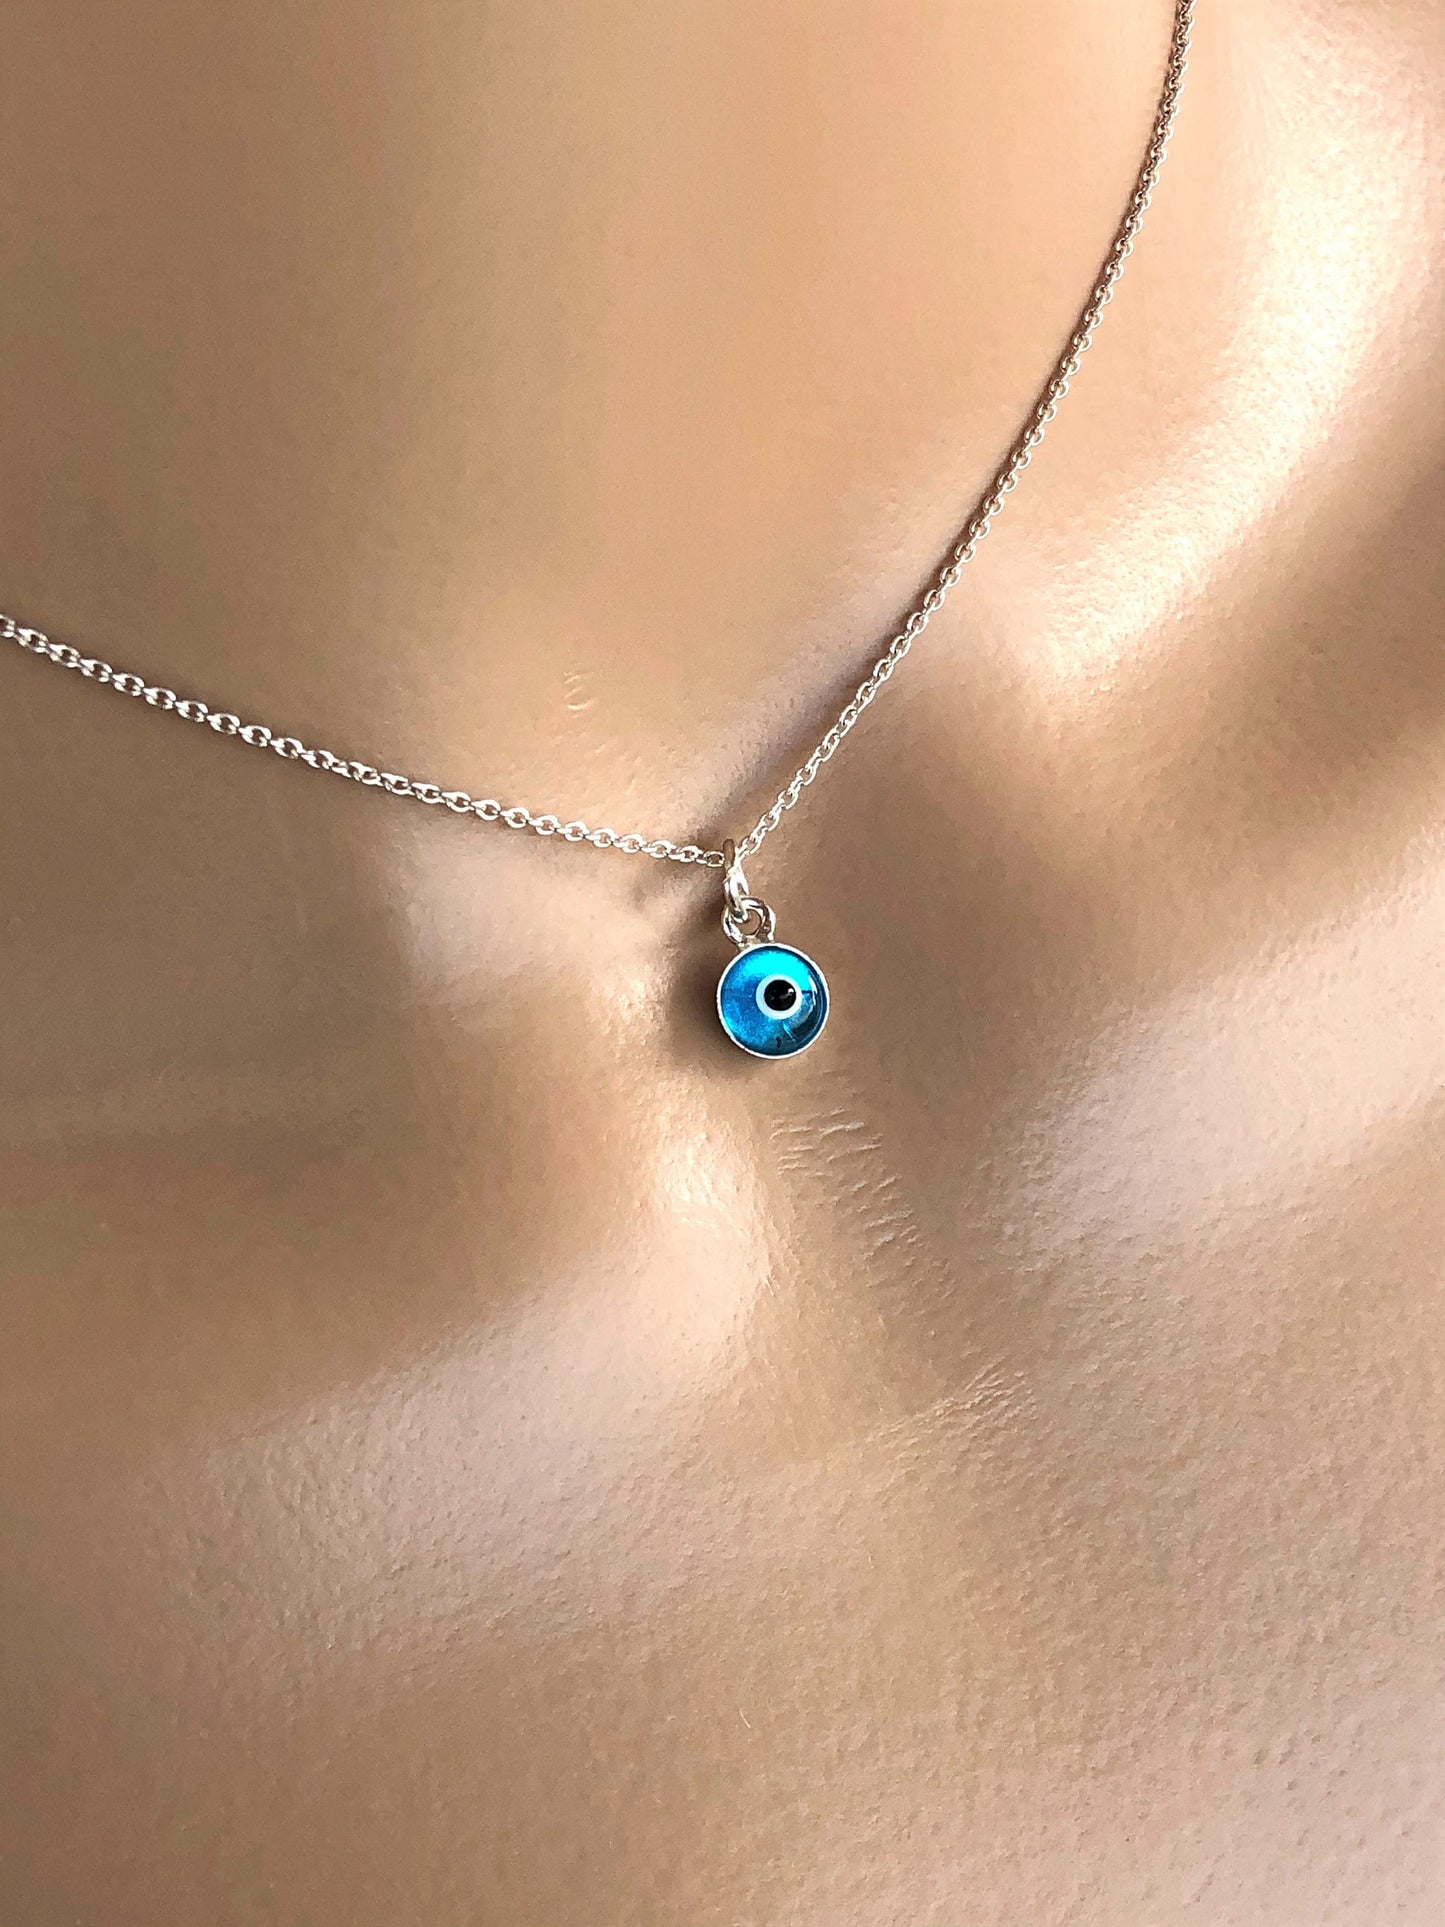 Tiny evil eye pendant necklace, sterling silver necklace, blue evil eye pendant